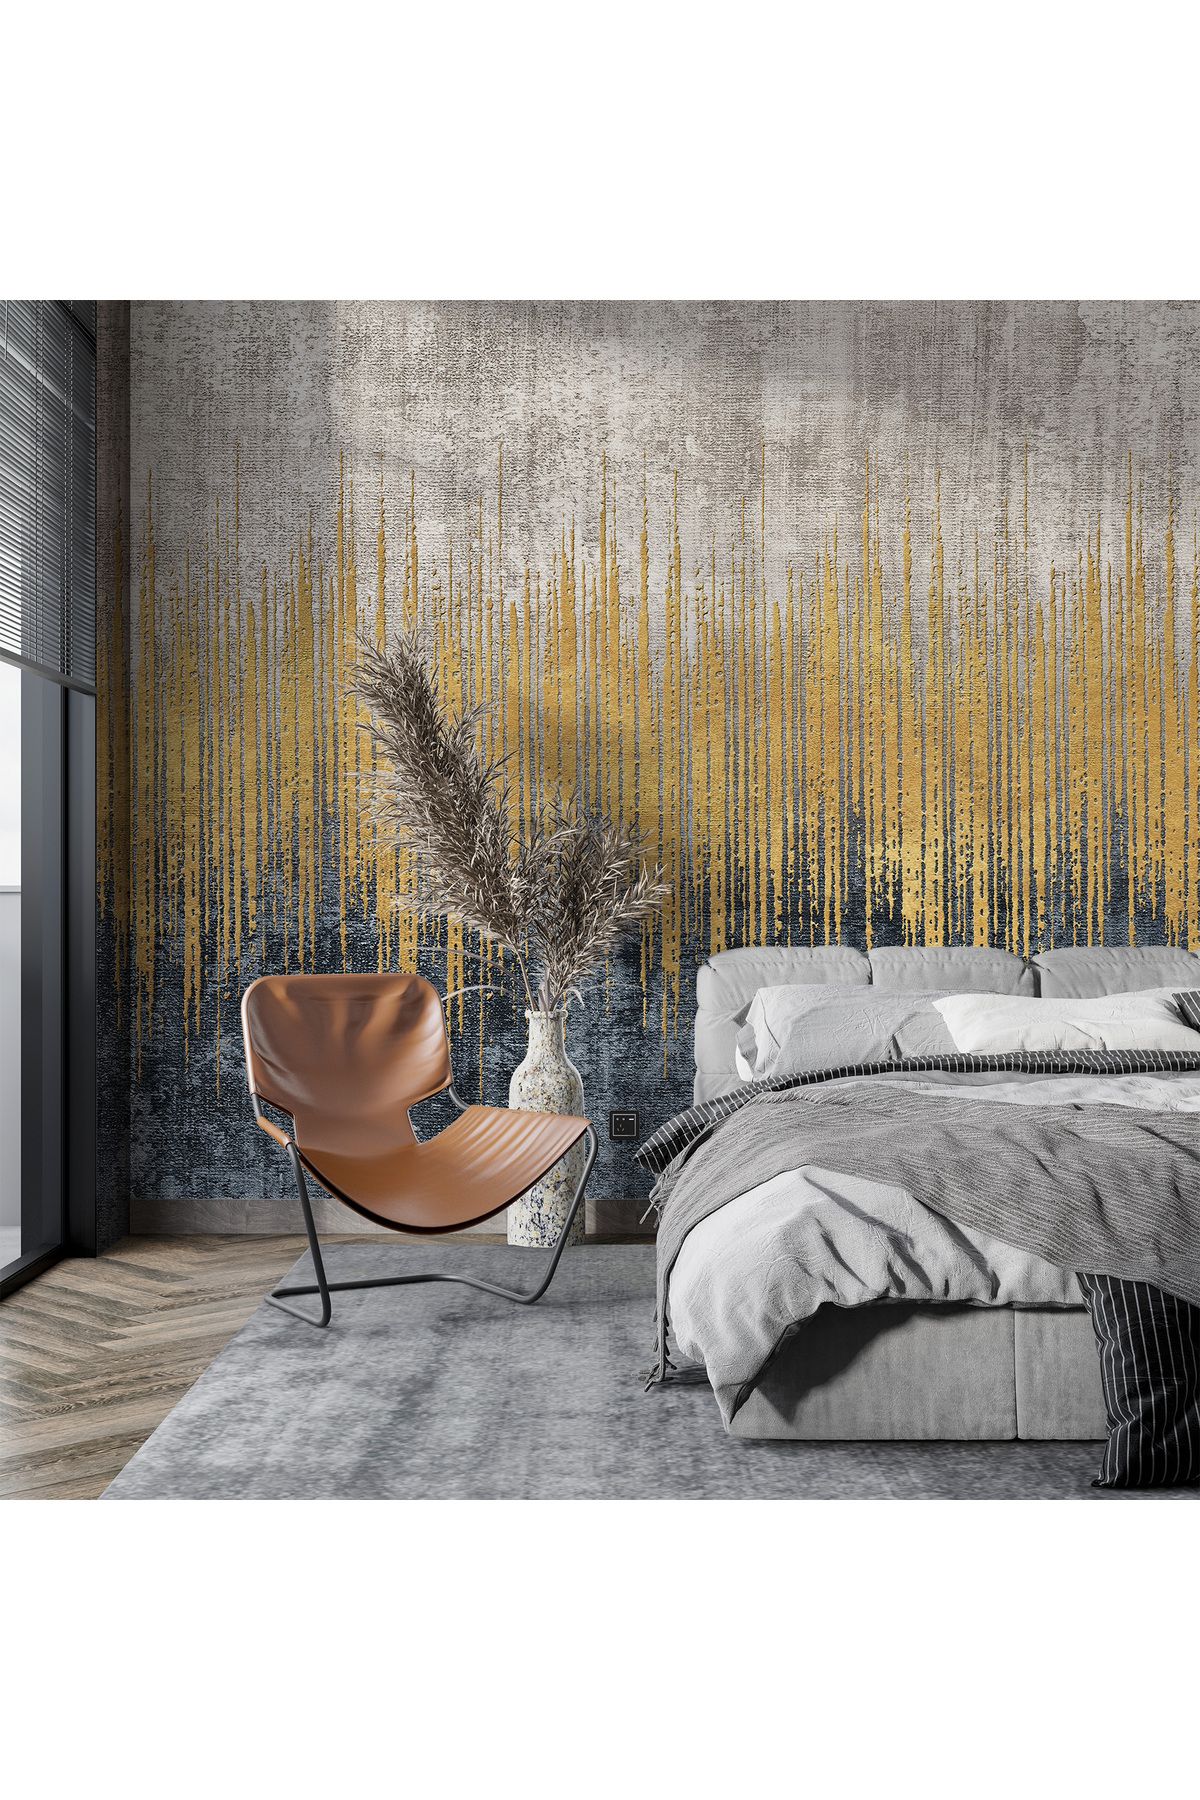 Plustablo Modern Altın Rengi Duvar Kağıdı, Soyut Salon için Duvar Kağıdı, Gökyüzü Ofis için Trend Duvar Kağıdı